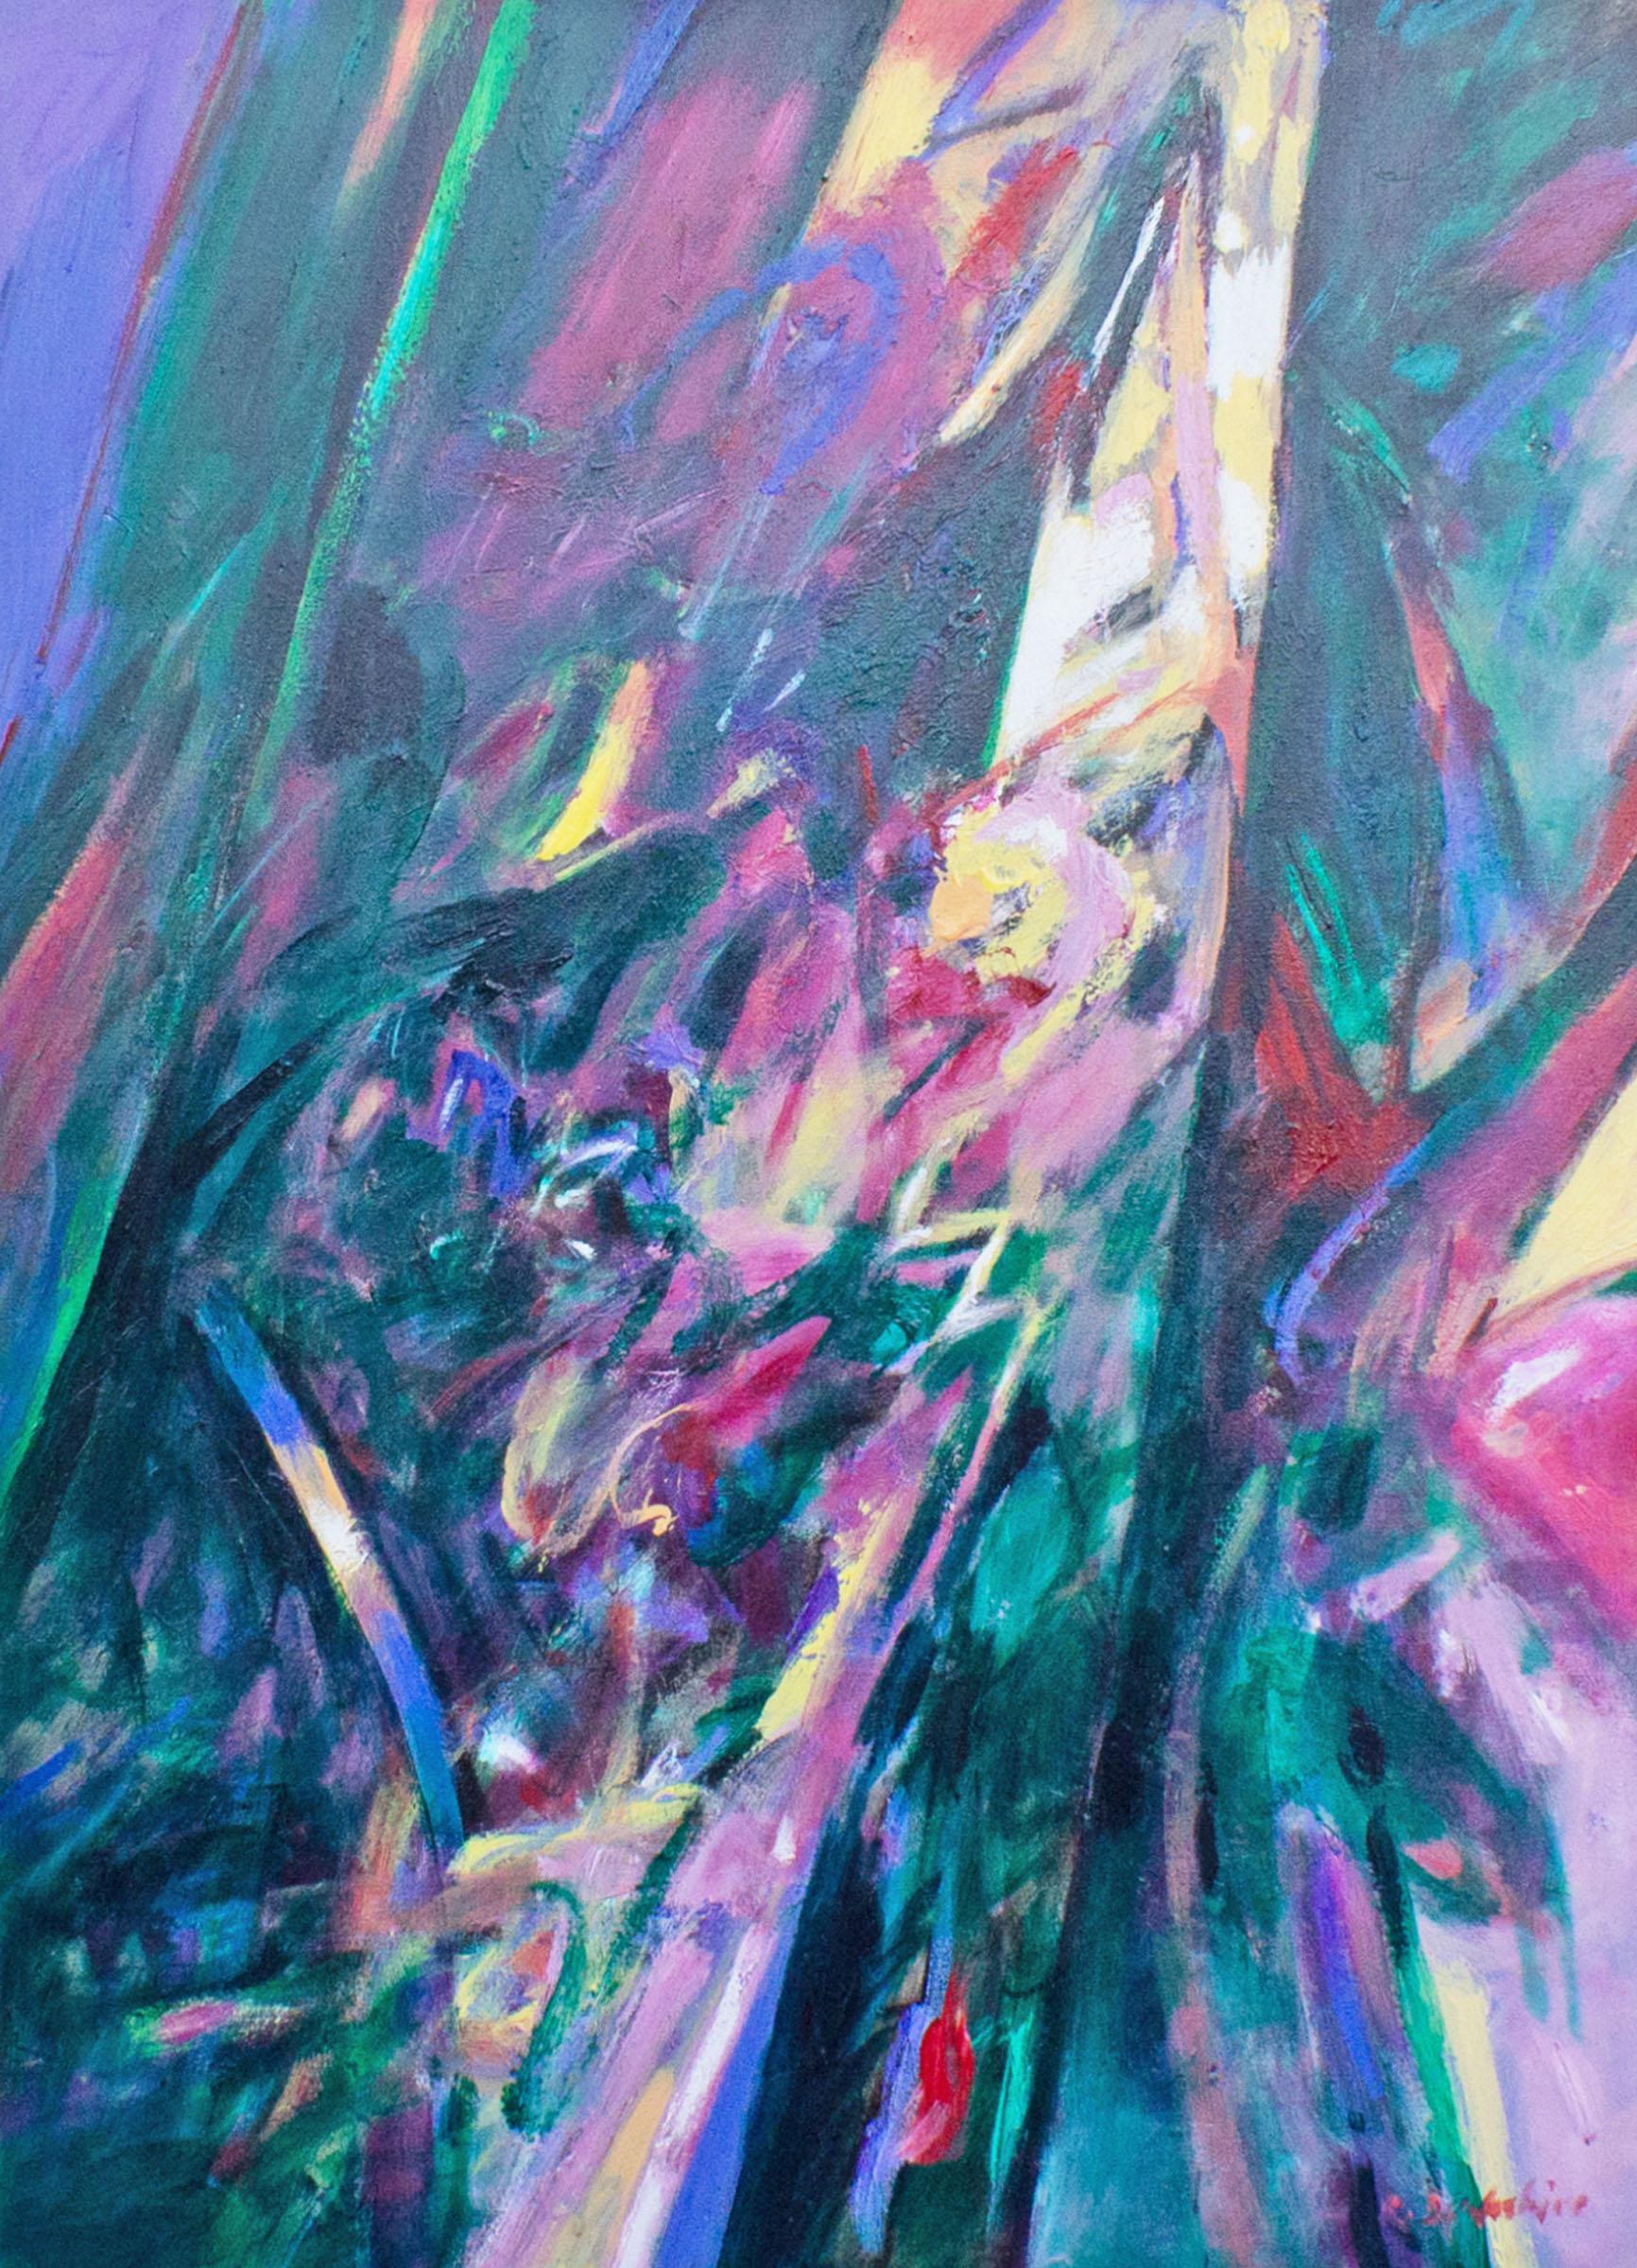 Ein abstraktes Gemälde in Öl auf Leinwand des Künstlers Robert B. Berkshire (1932-2010) aus Indiana. Das abstrakte Gemälde in lila und blaugrün stellt eine Montage aus frenetischem Fuchsia, Gelb, Grün und Blau dar. Ein weißer Rand umgibt das